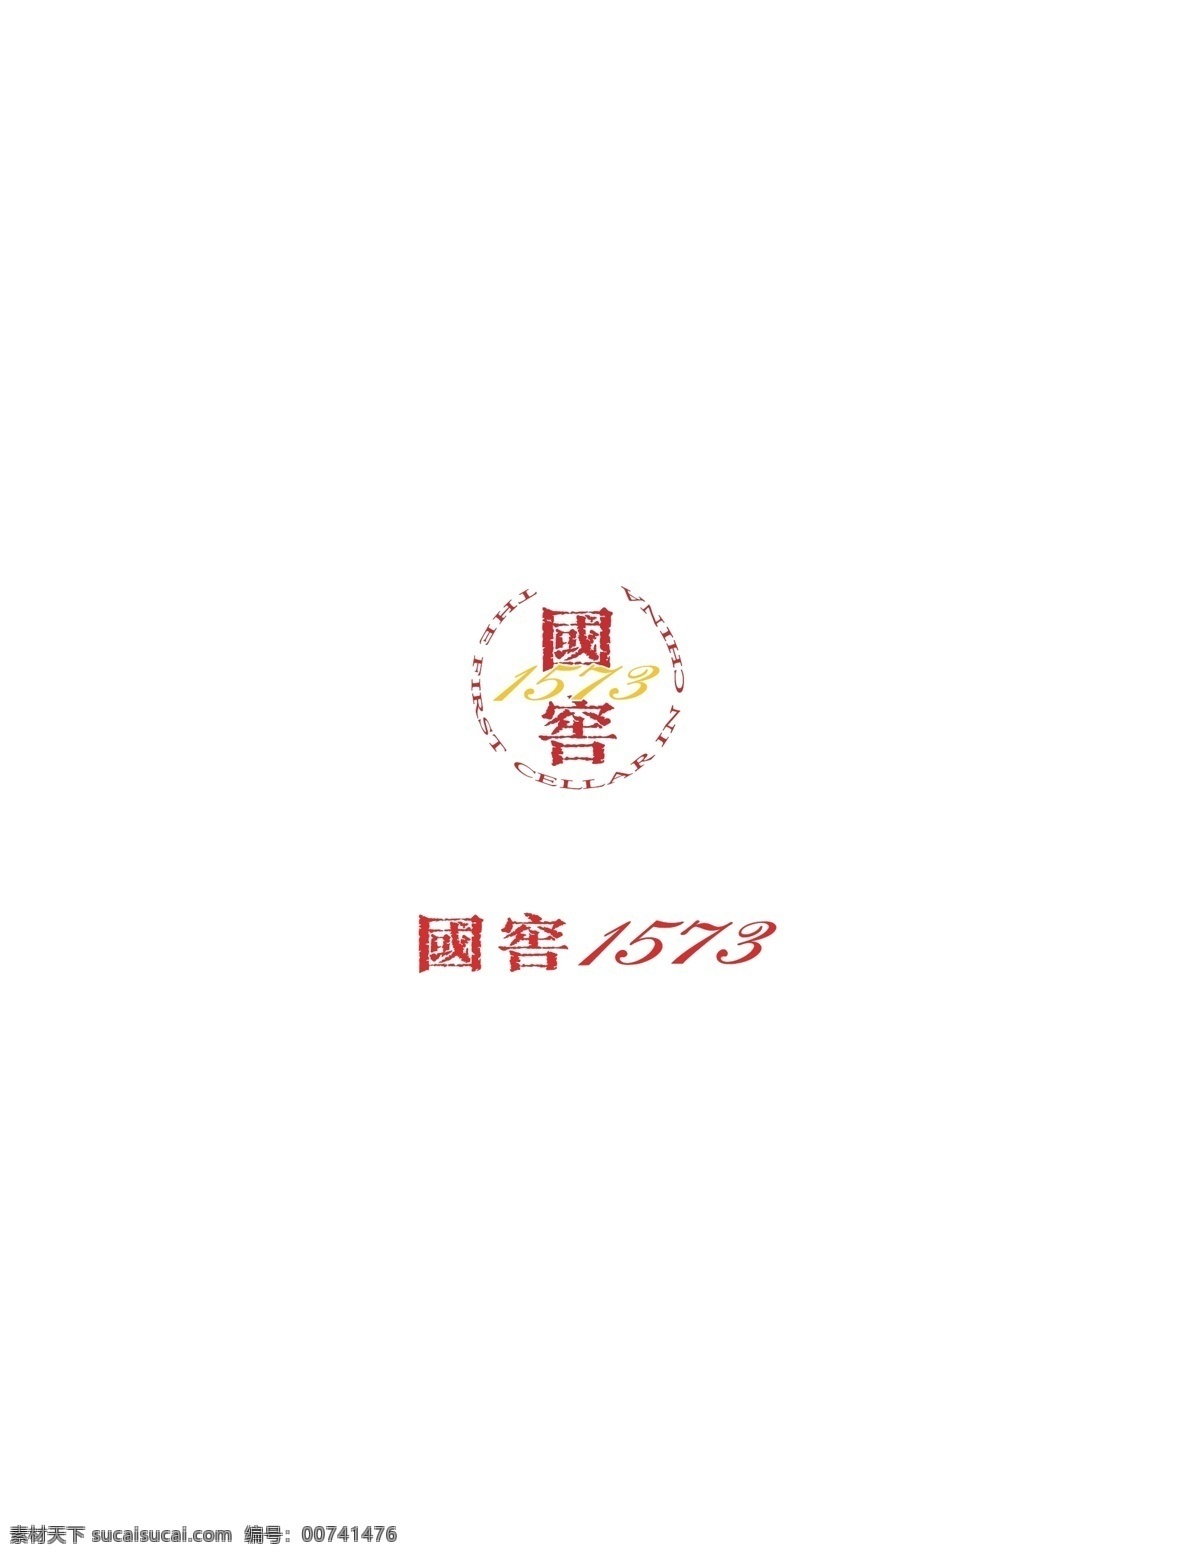 国 窖 1573 标志 国窖1573 白酒logo 国窖 1573标志 logo设计